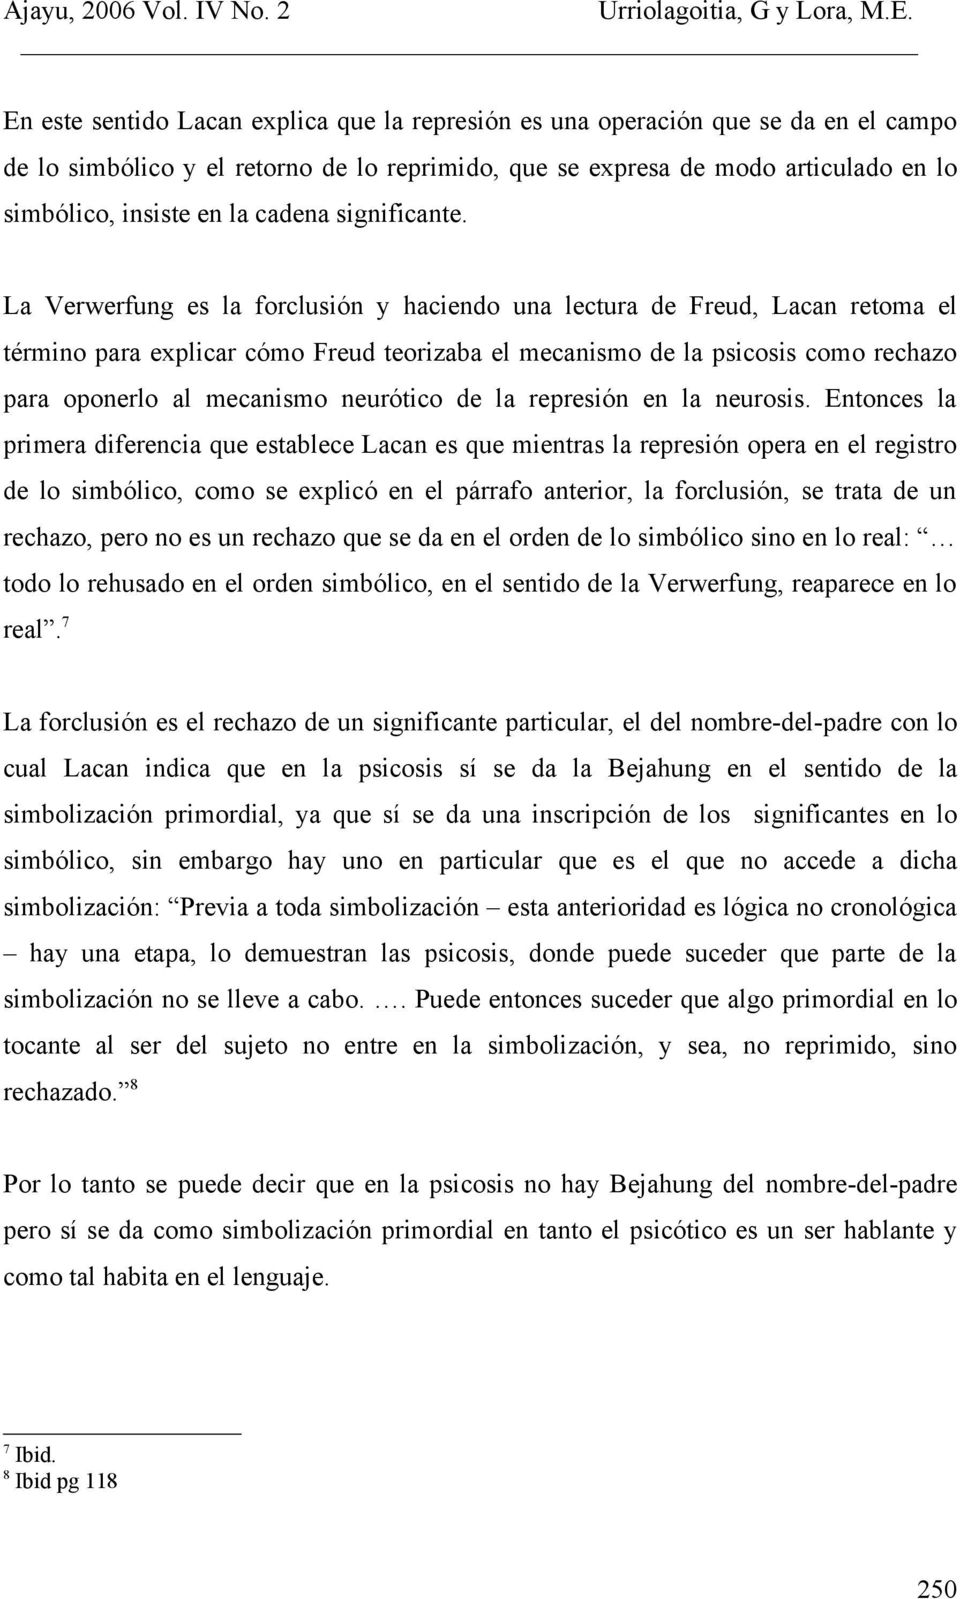 La Verwerfung es la forclusión y haciendo una lectura de Freud, Lacan retoma el término para explicar cómo Freud teorizaba el mecanismo de la psicosis como rechazo para oponerlo al mecanismo